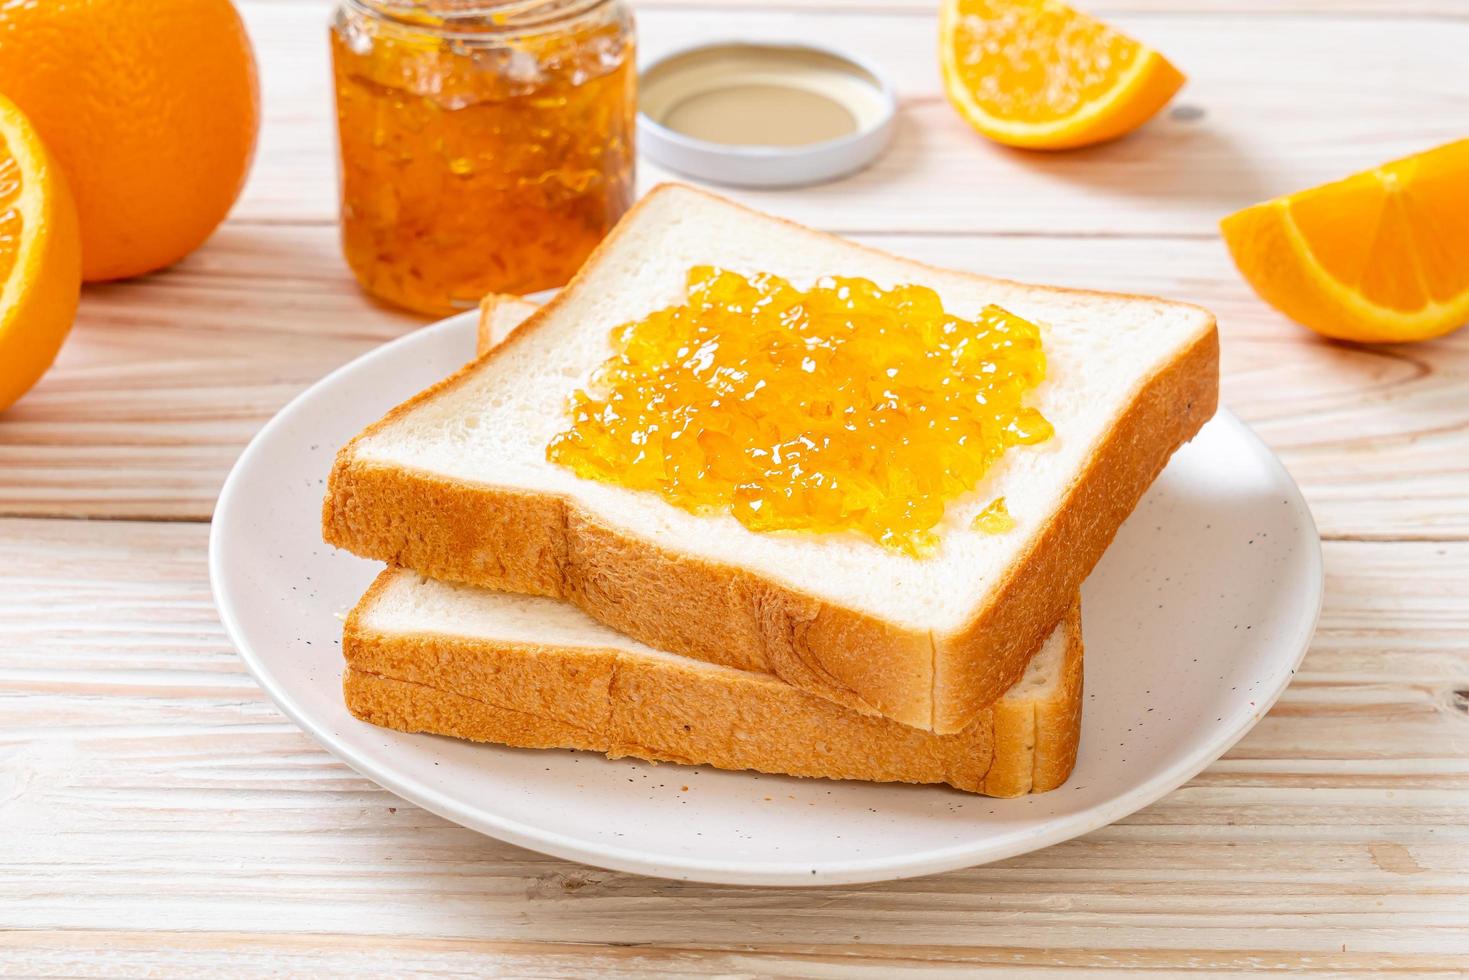 rebanadas de pan con mermelada de naranja foto